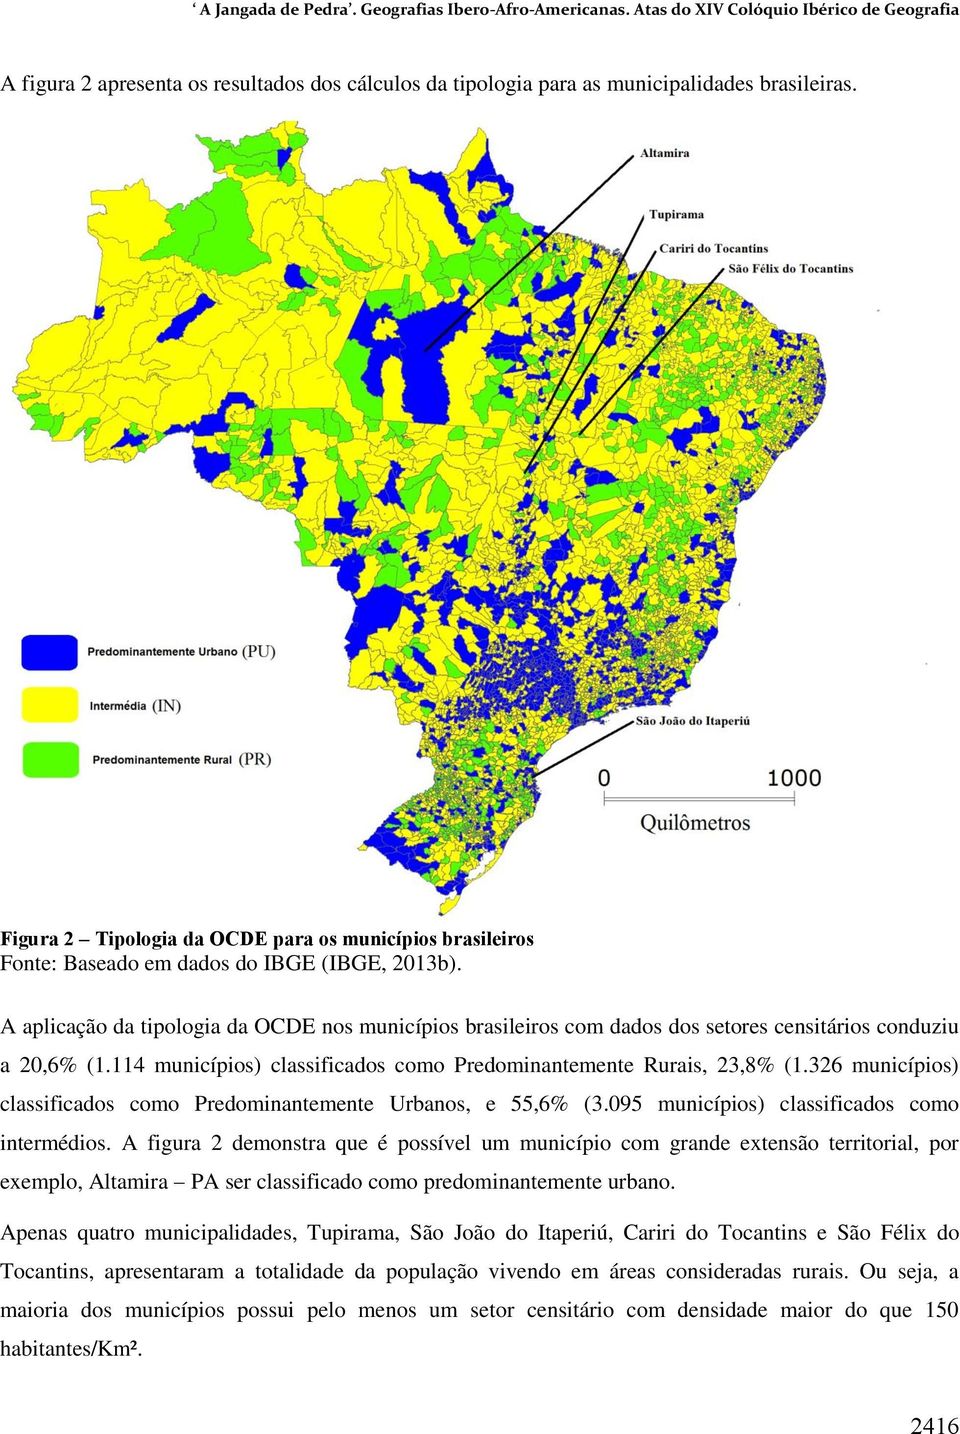 A aplicação da tipologia da OCDE nos municípios brasileiros com dados dos setores censitários conduziu a 20,6% (1.114 municípios) classificados como Predominantemente Rurais, 23,8% (1.